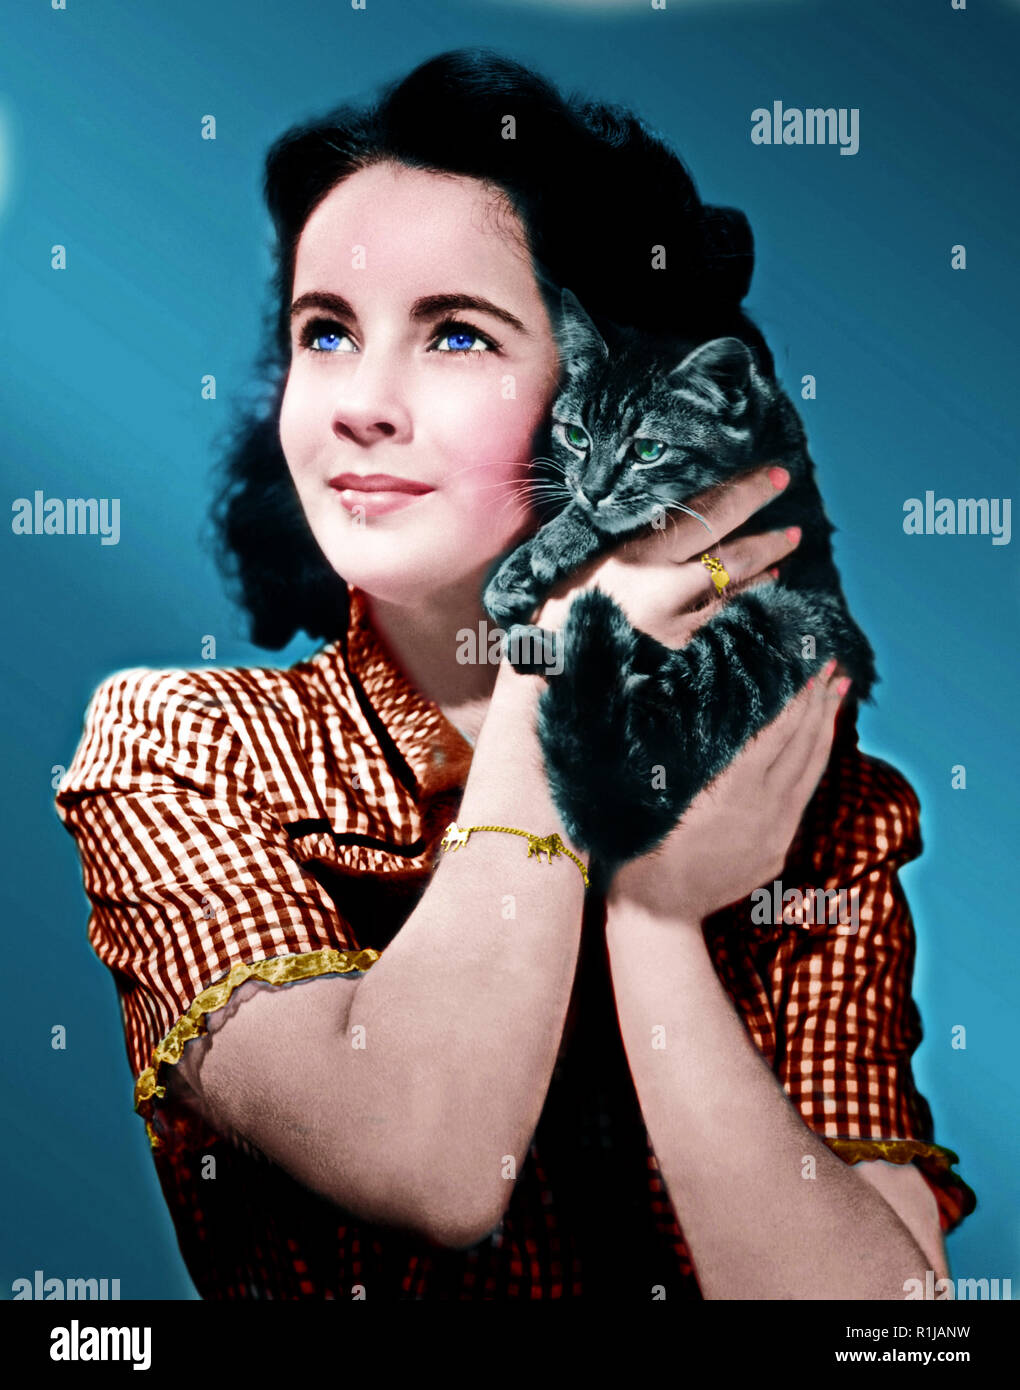 Dame Elizabeth Rosemond Taylor DBE (Février 27, 1932 - March 23, 2011) était un acteur américain, femme d'affaires, et de l'action humanitaire. Elle a commencé sa carrière comme actrice d'un enfant au début des années 1940, et a été l'un des plus populaires des stars du cinéma hollywoodien classique dans les années 1950. Elle poursuit sa carrière avec succès dans les années 1960, et est resté un personnage public bien connu pour le reste de sa vie. En 1999, l'American Film Institute l'a nommée le septième plus grand-écran femelle légende. Hollywood : Crédit Photo Archive / MediaPunch Banque D'Images